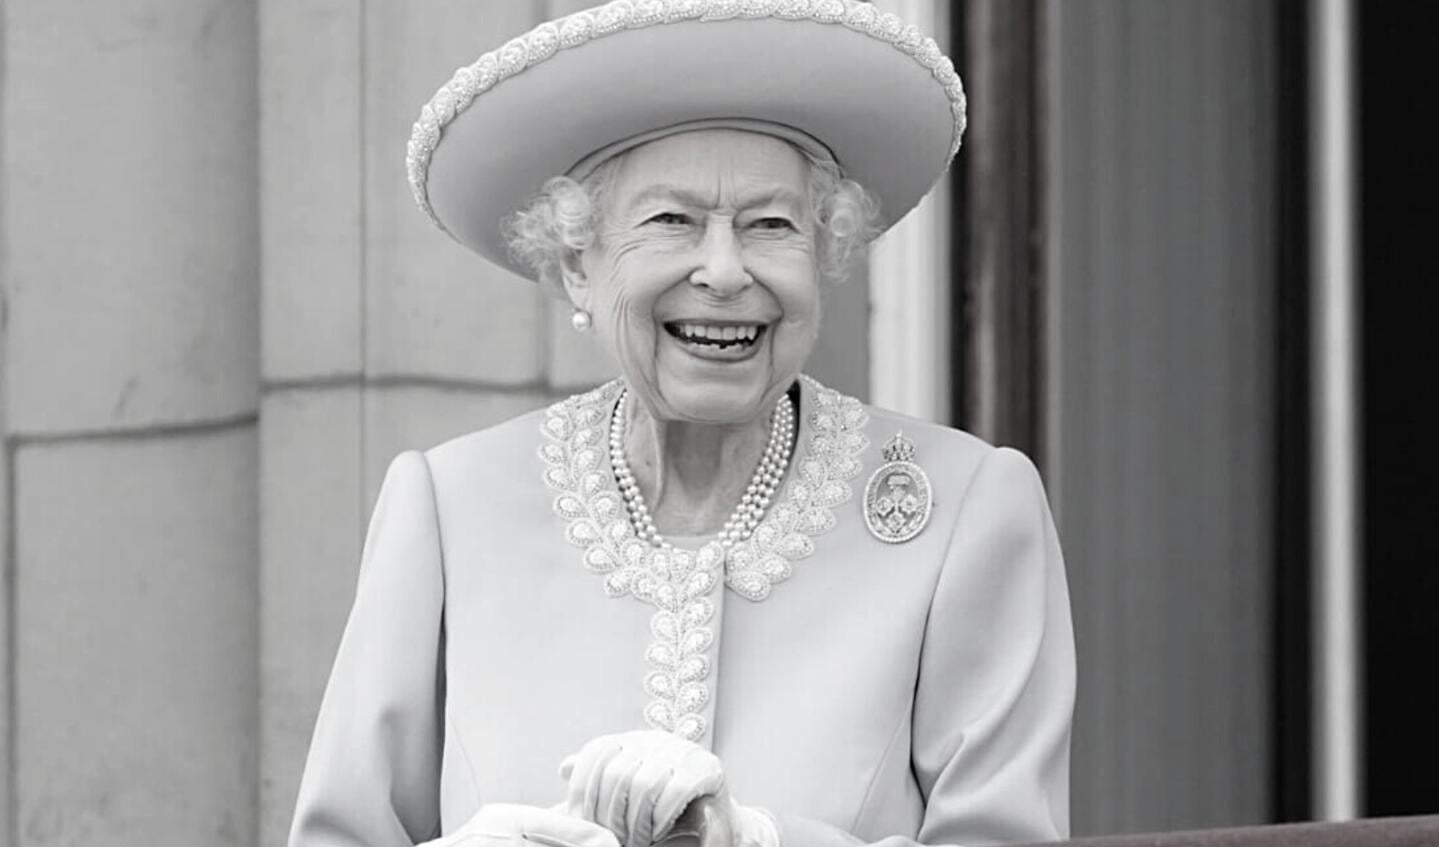 Koningin Elizabeth II op het balkon van Buckingham Palace op de eerste dag van de viering van haar Platinum Jubileum, 6 februari 2022.